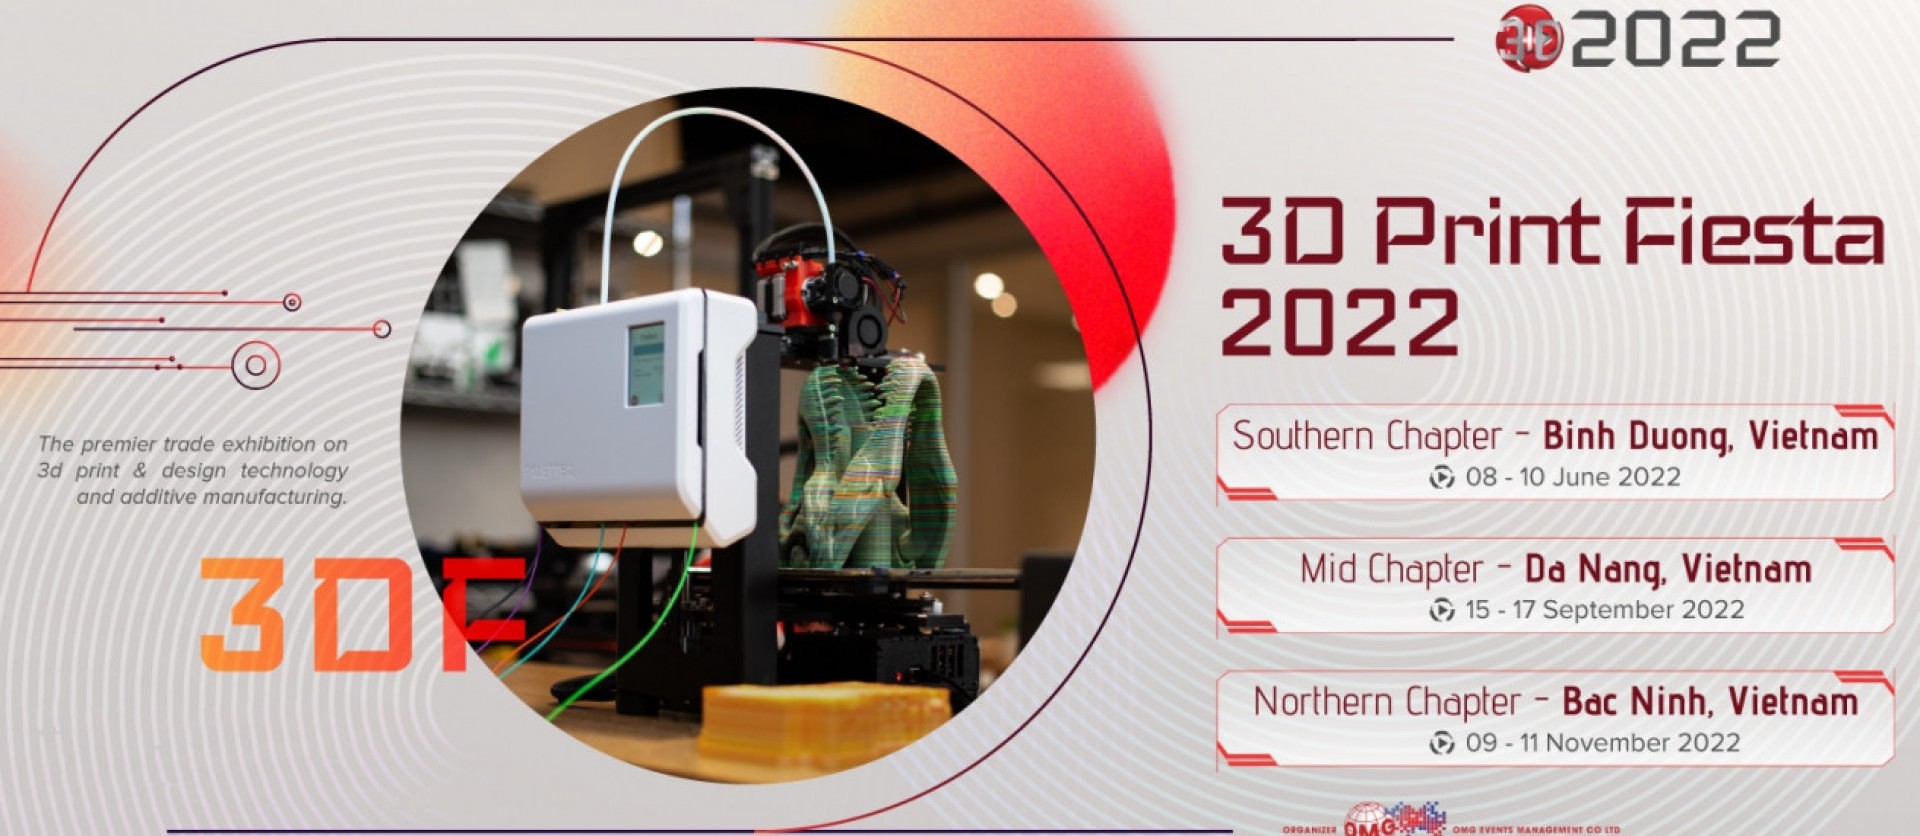 3DF Đà Nẵng 2022 - Triển lãm Công nghệ in 3D